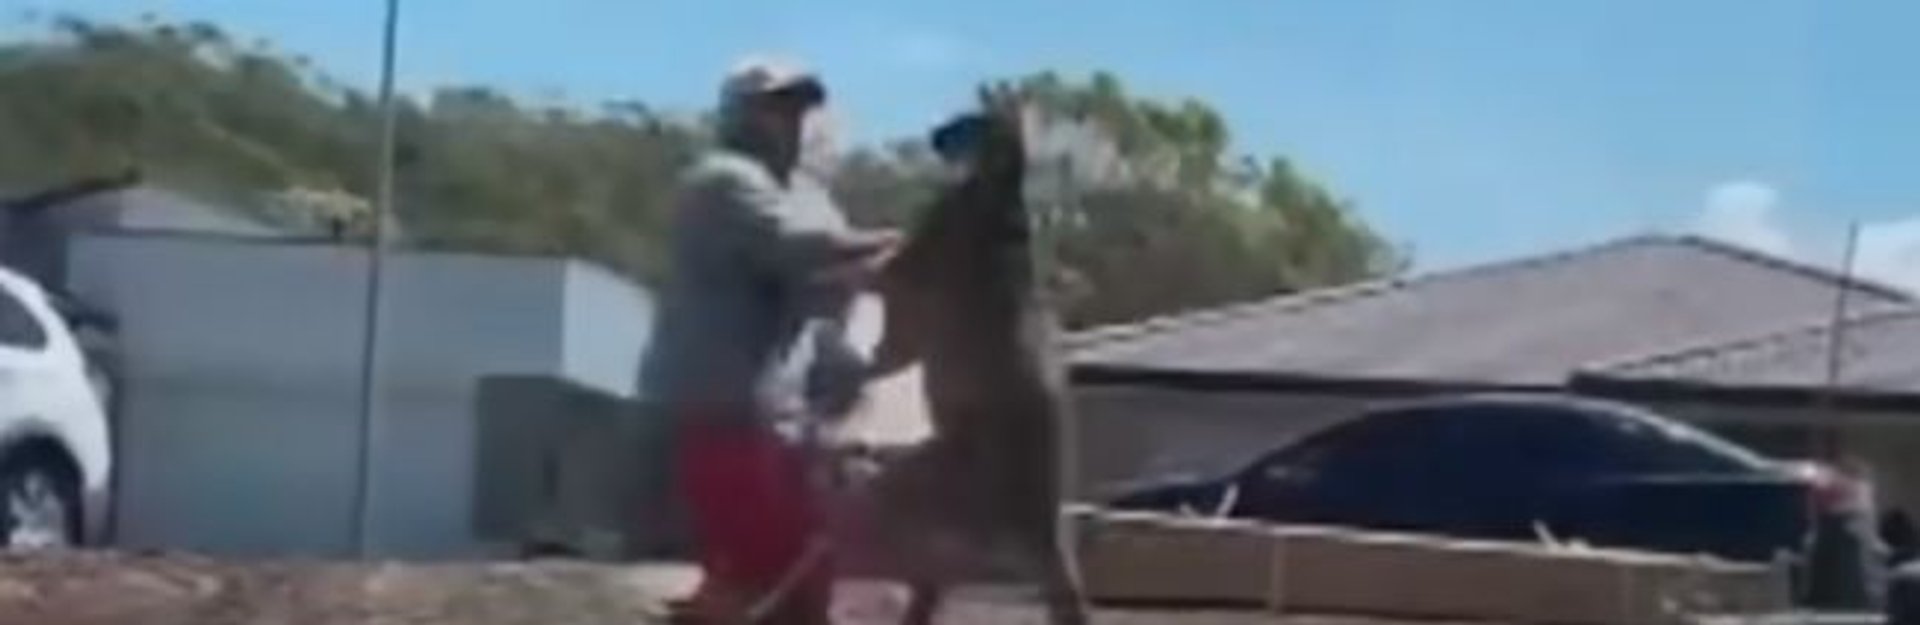 kangur bije mężczyznę